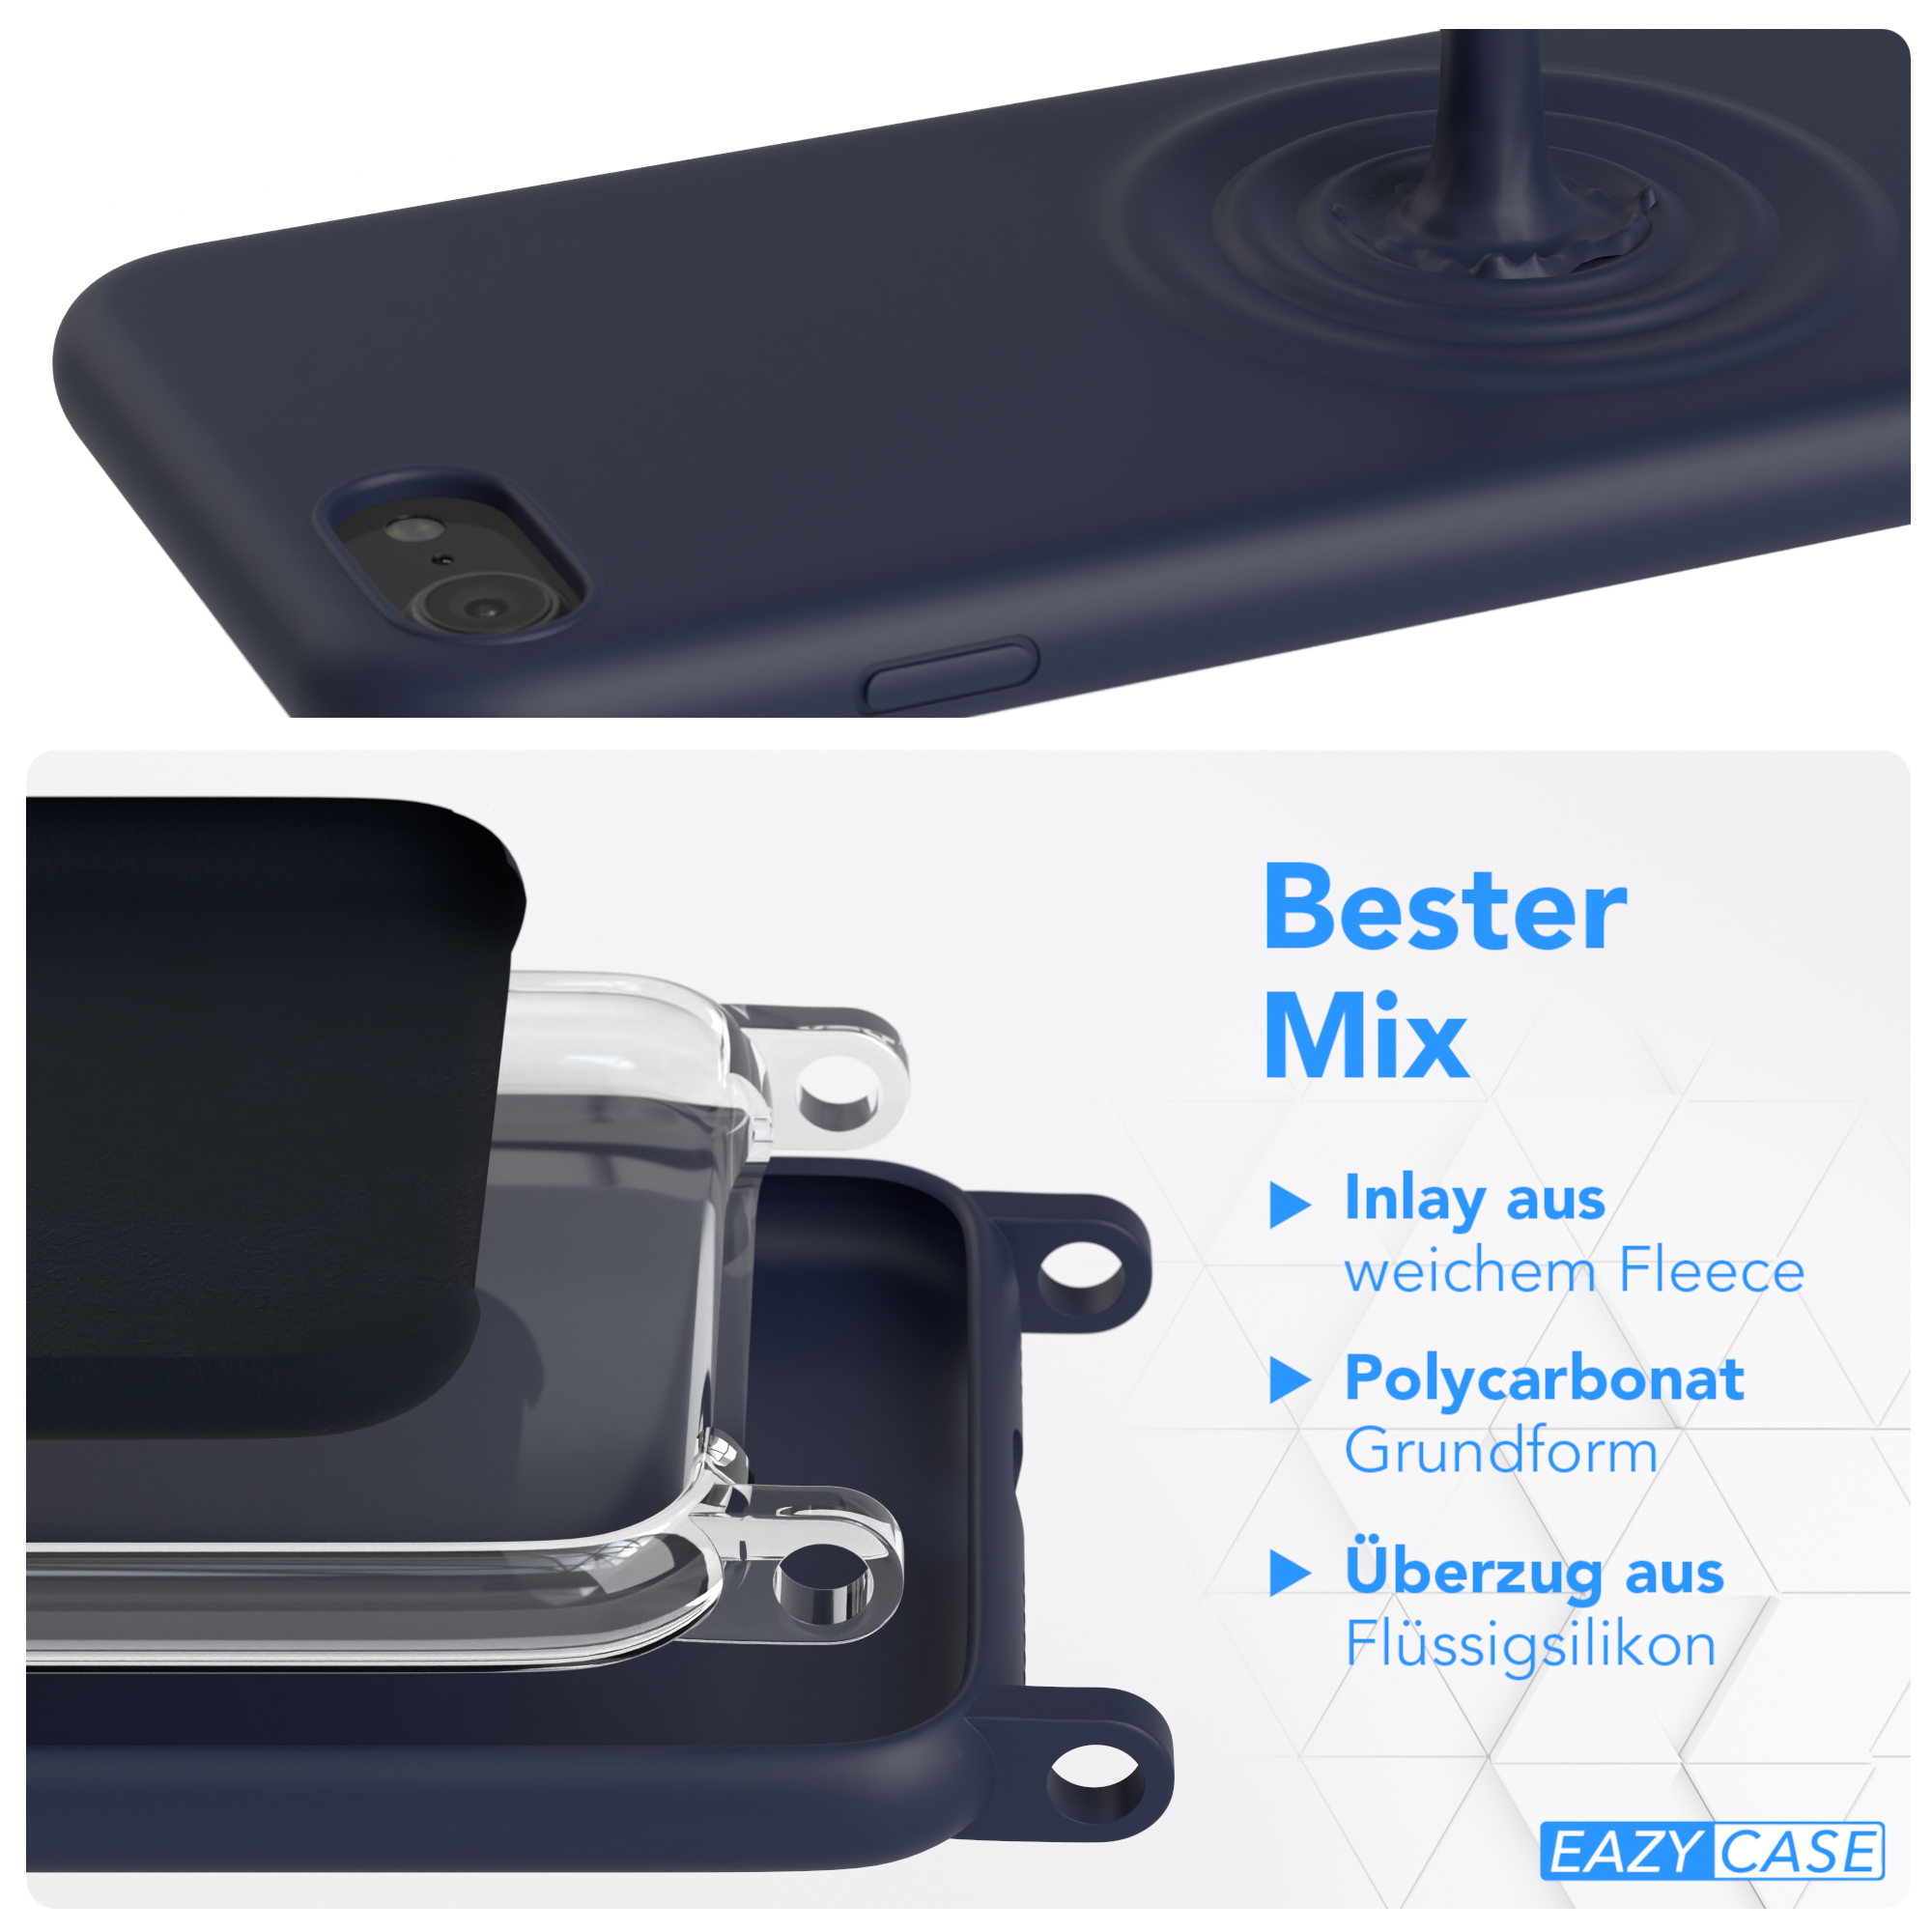 EAZY CASE Runde Handykette mit Apple, / iPhone Karabiner, 7 2020, Umhängetasche, 8, / iPhone Nachtblau Dunkel / 2022 SE SE Blau